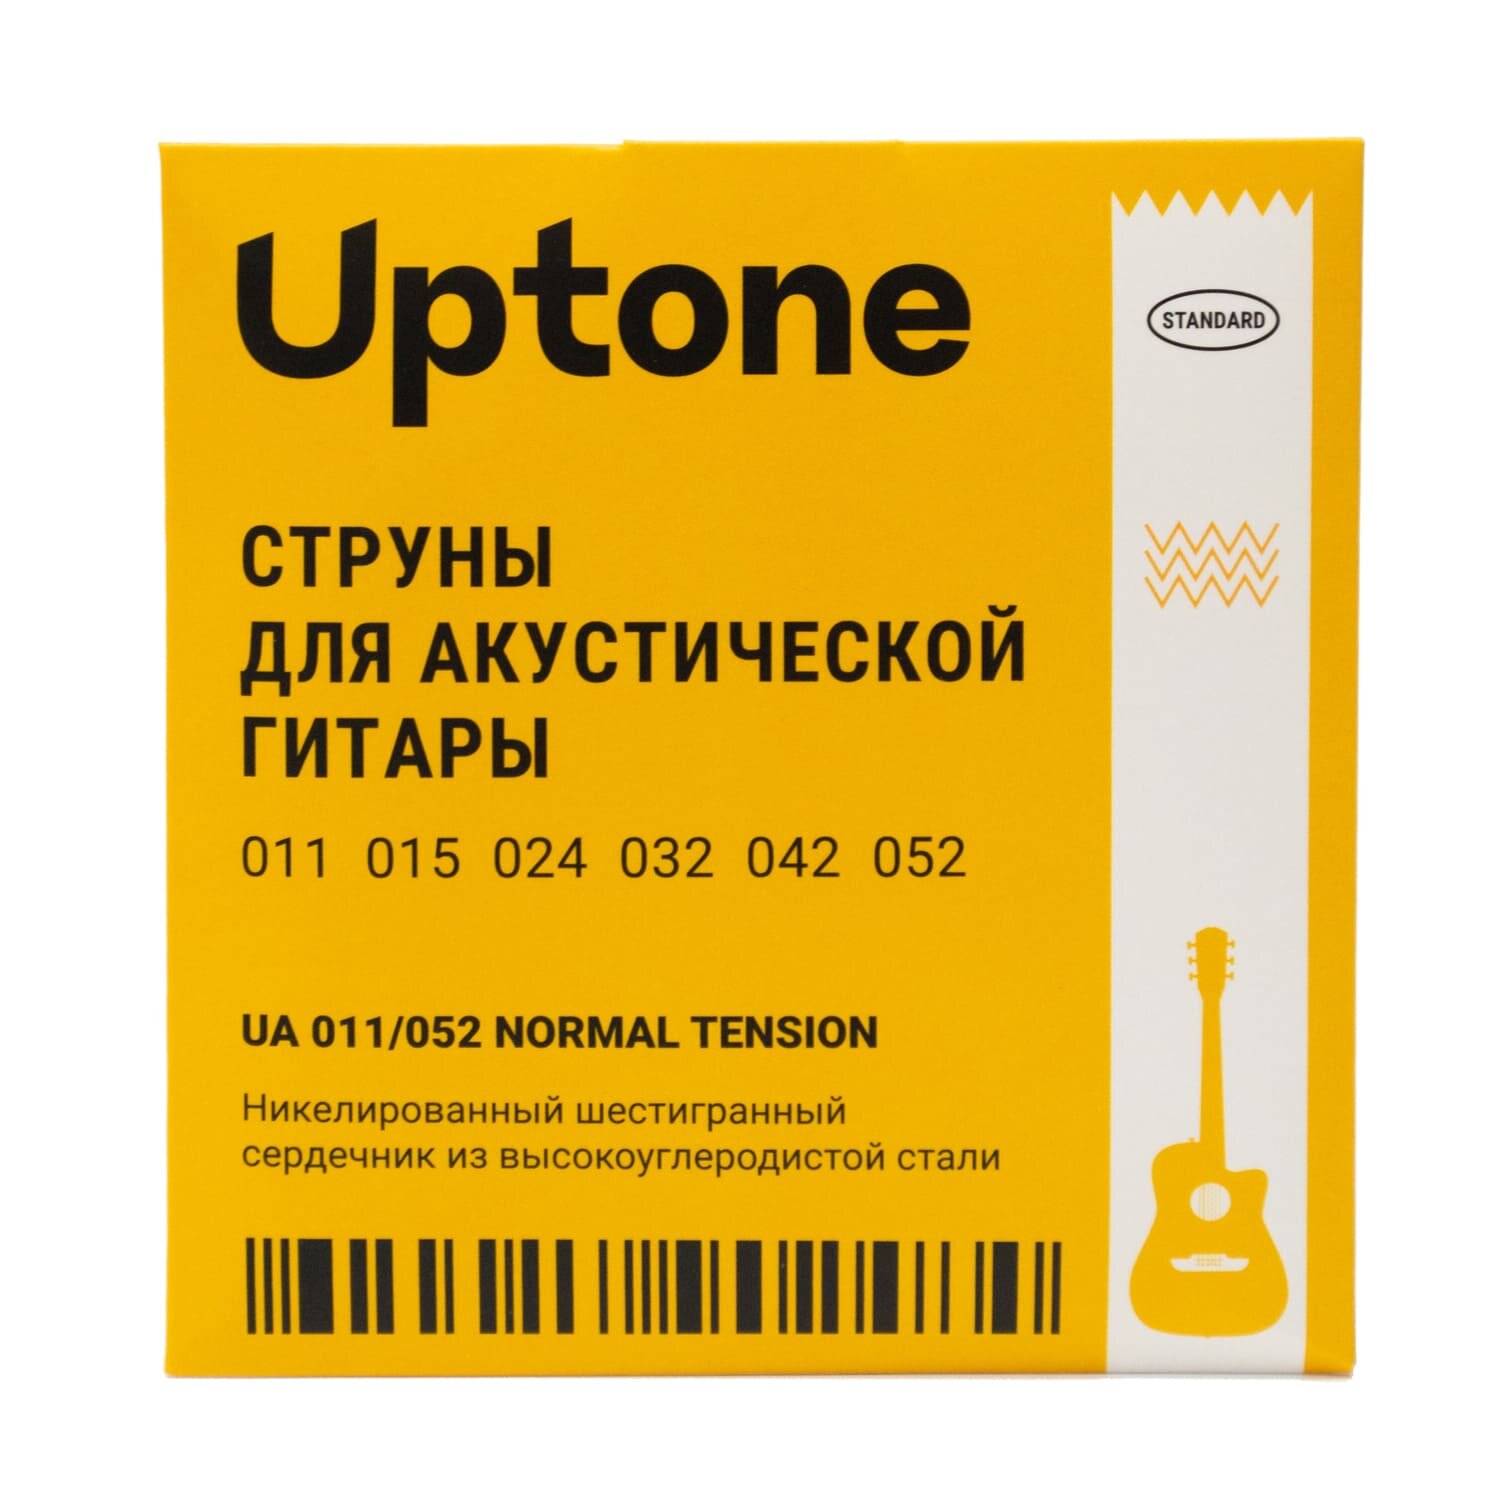 UPTONE Standard UA 011/052 струны для акустической гитары. Сердечник из высокоуглеродистой стали. Фосфорная бронза.